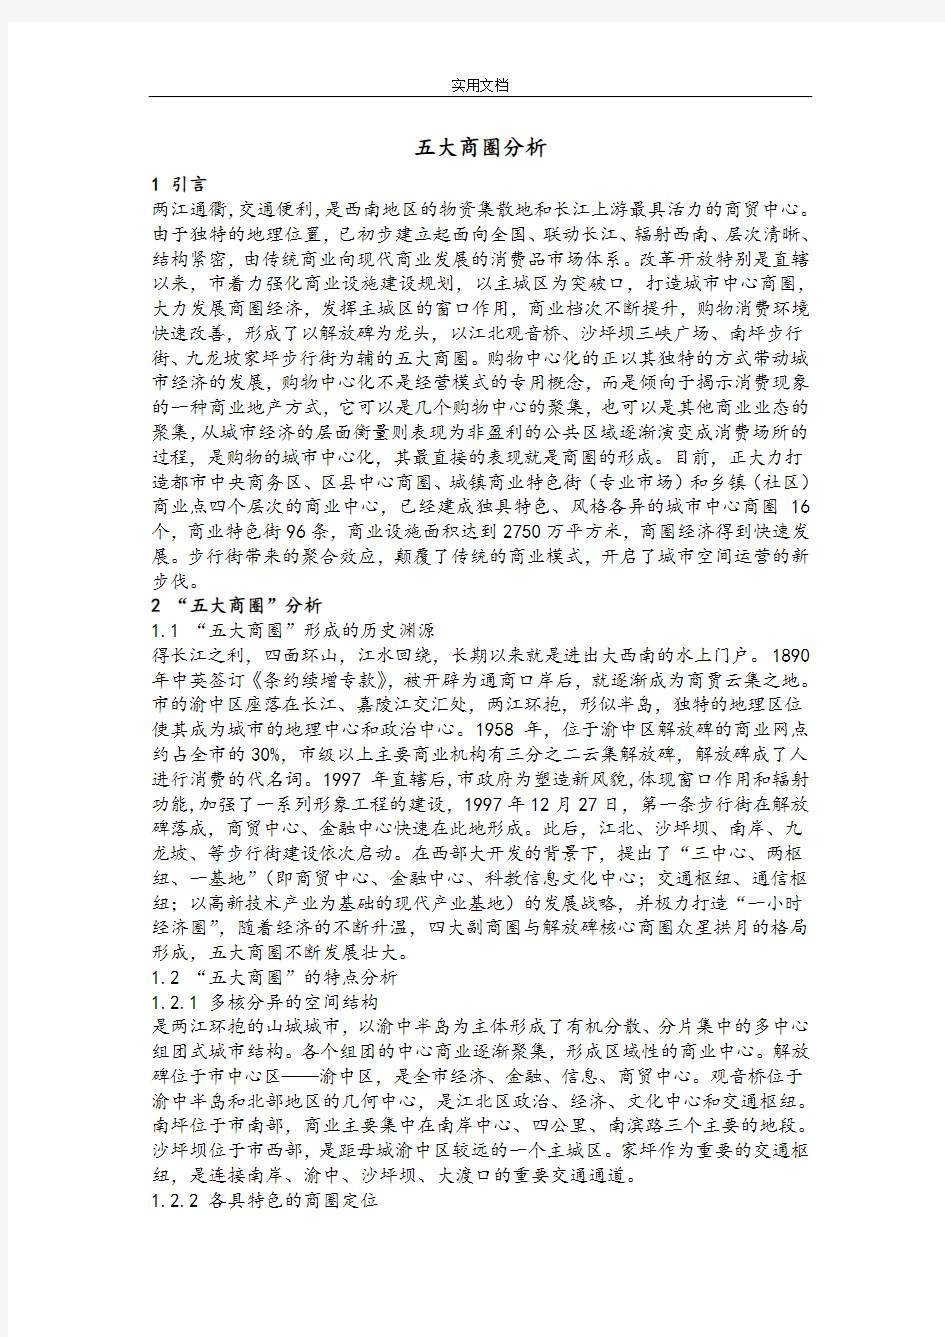 重庆五大商圈分析报告